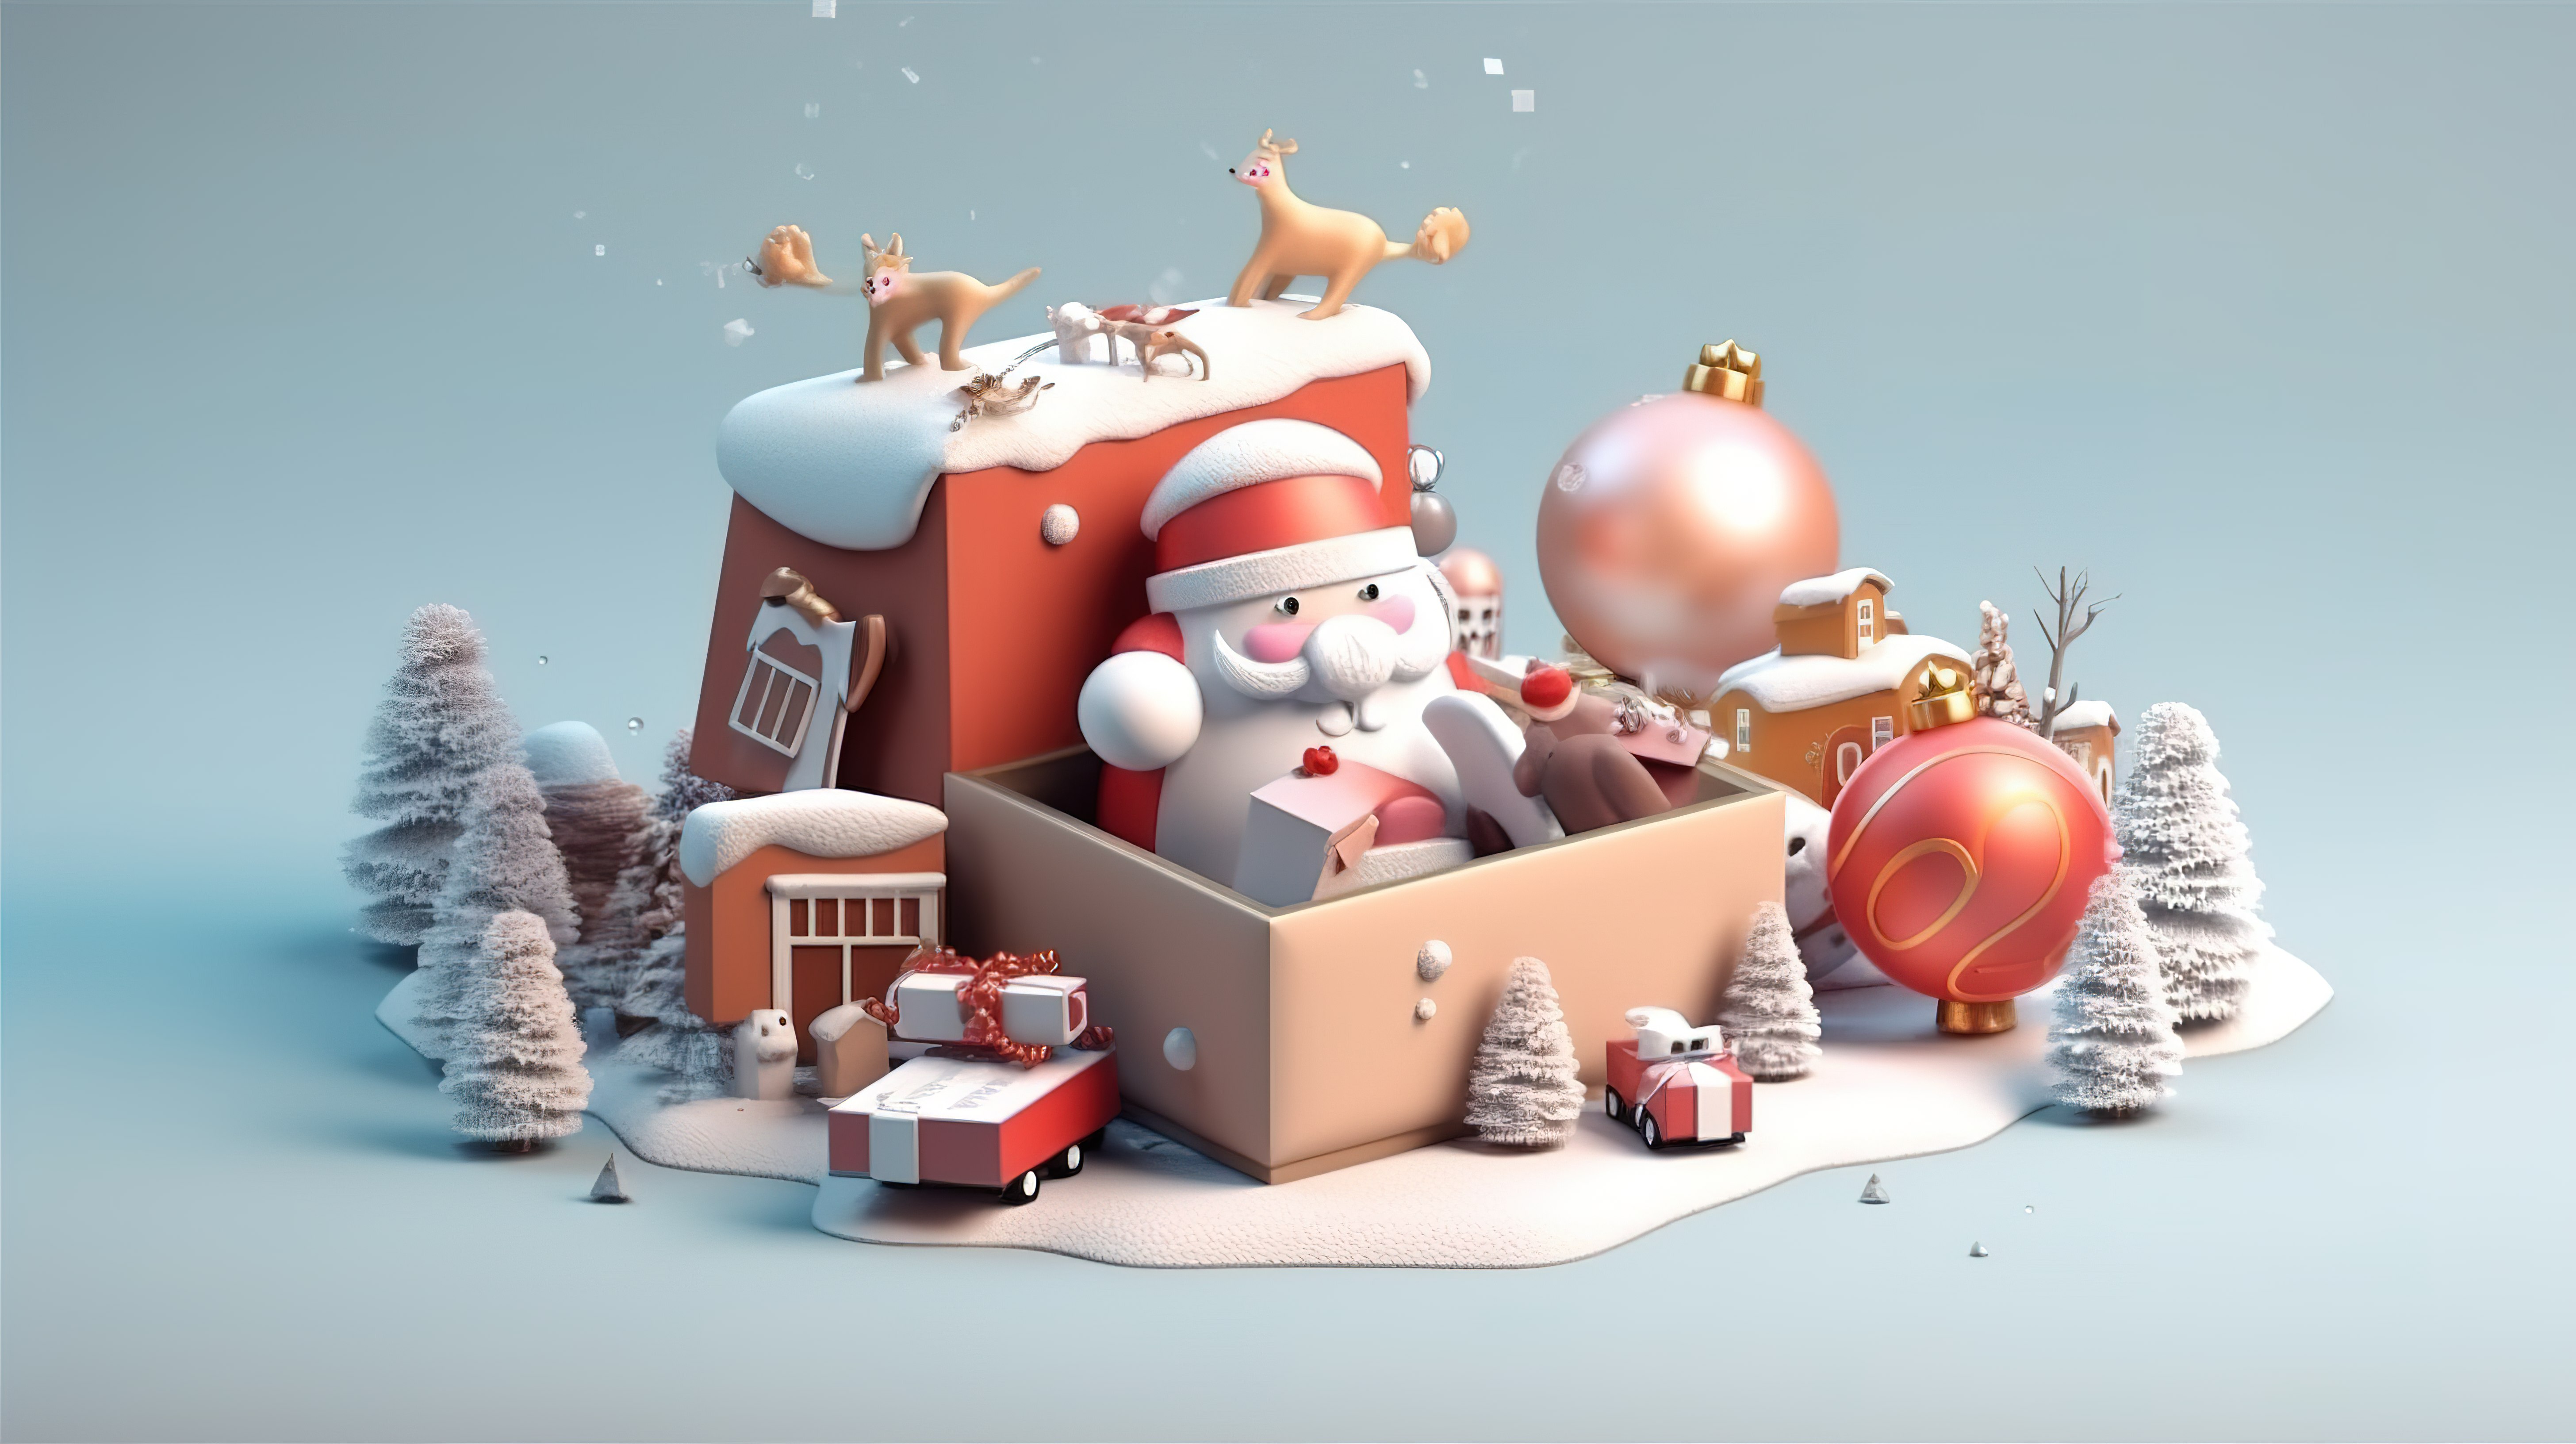 未包装的礼品盒，配有圣诞老人和节日圣诞节装饰品，祝您圣诞快乐，新年快乐 3d图片